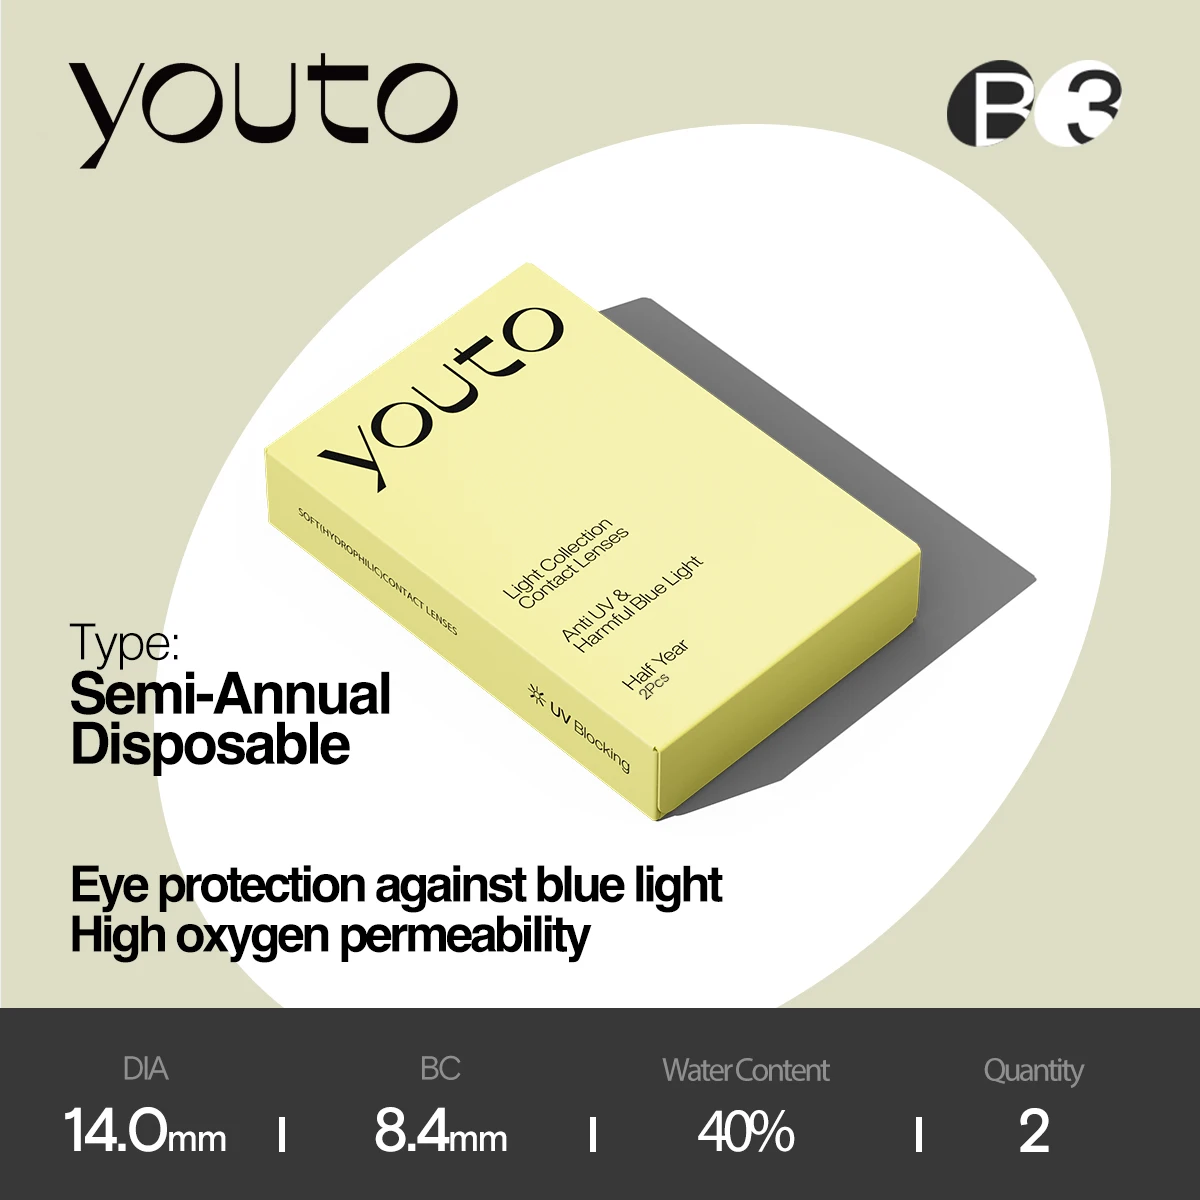 

Youto Light 6-месячные мягкие контактные линзы, ДР 8,4 мм, ДИА 14,0 мм, 40% влаги, контактные линзы, которые снижают воздействие синего света на сетчатку.